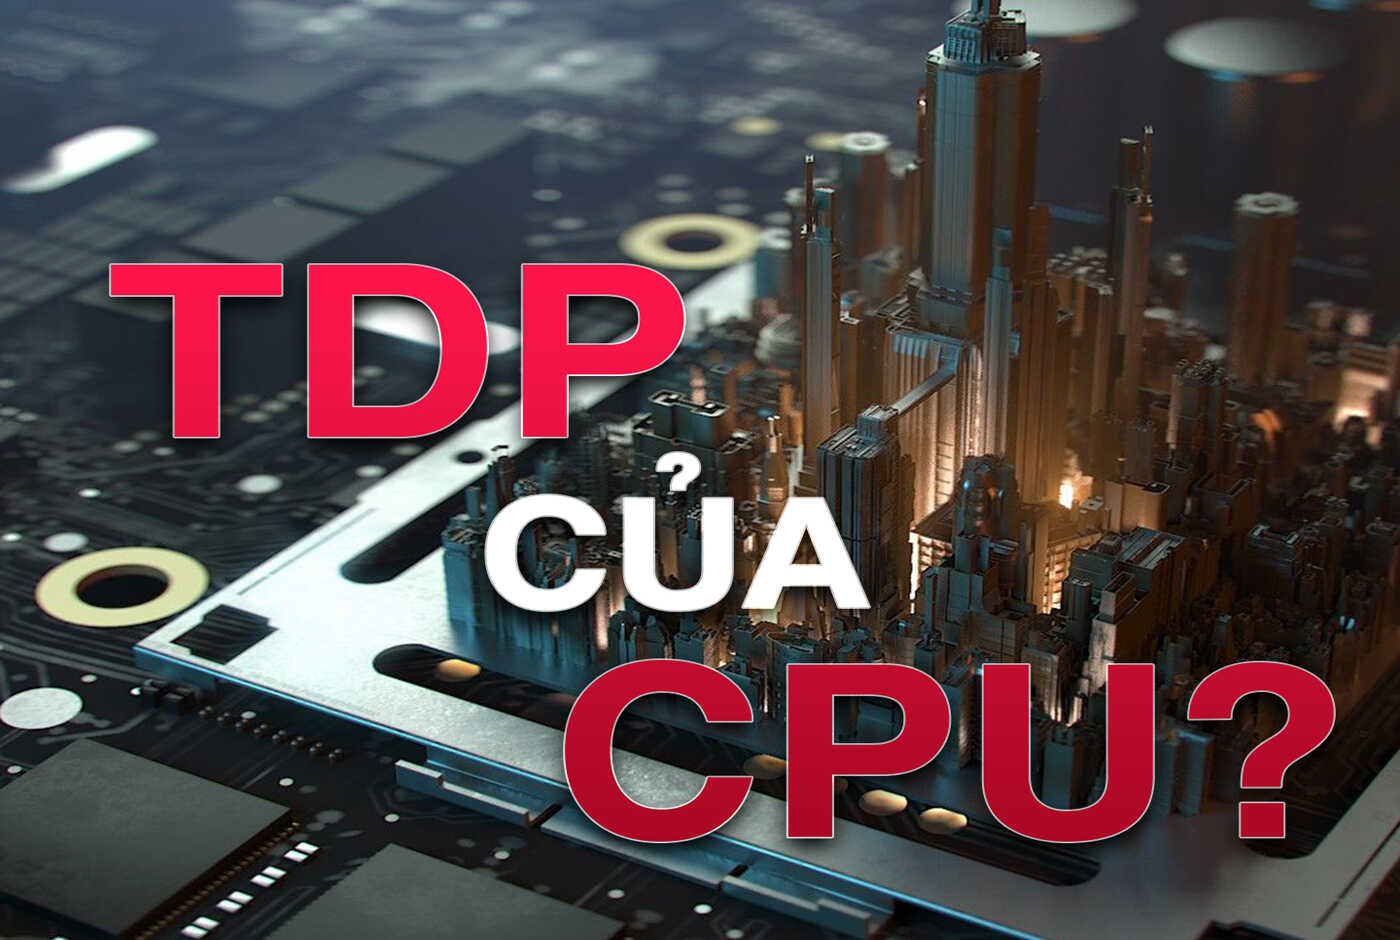 TDP là gì? Tại sao lại cần quan tâm TDP của CPU? Ý nghĩa của chỉ số này